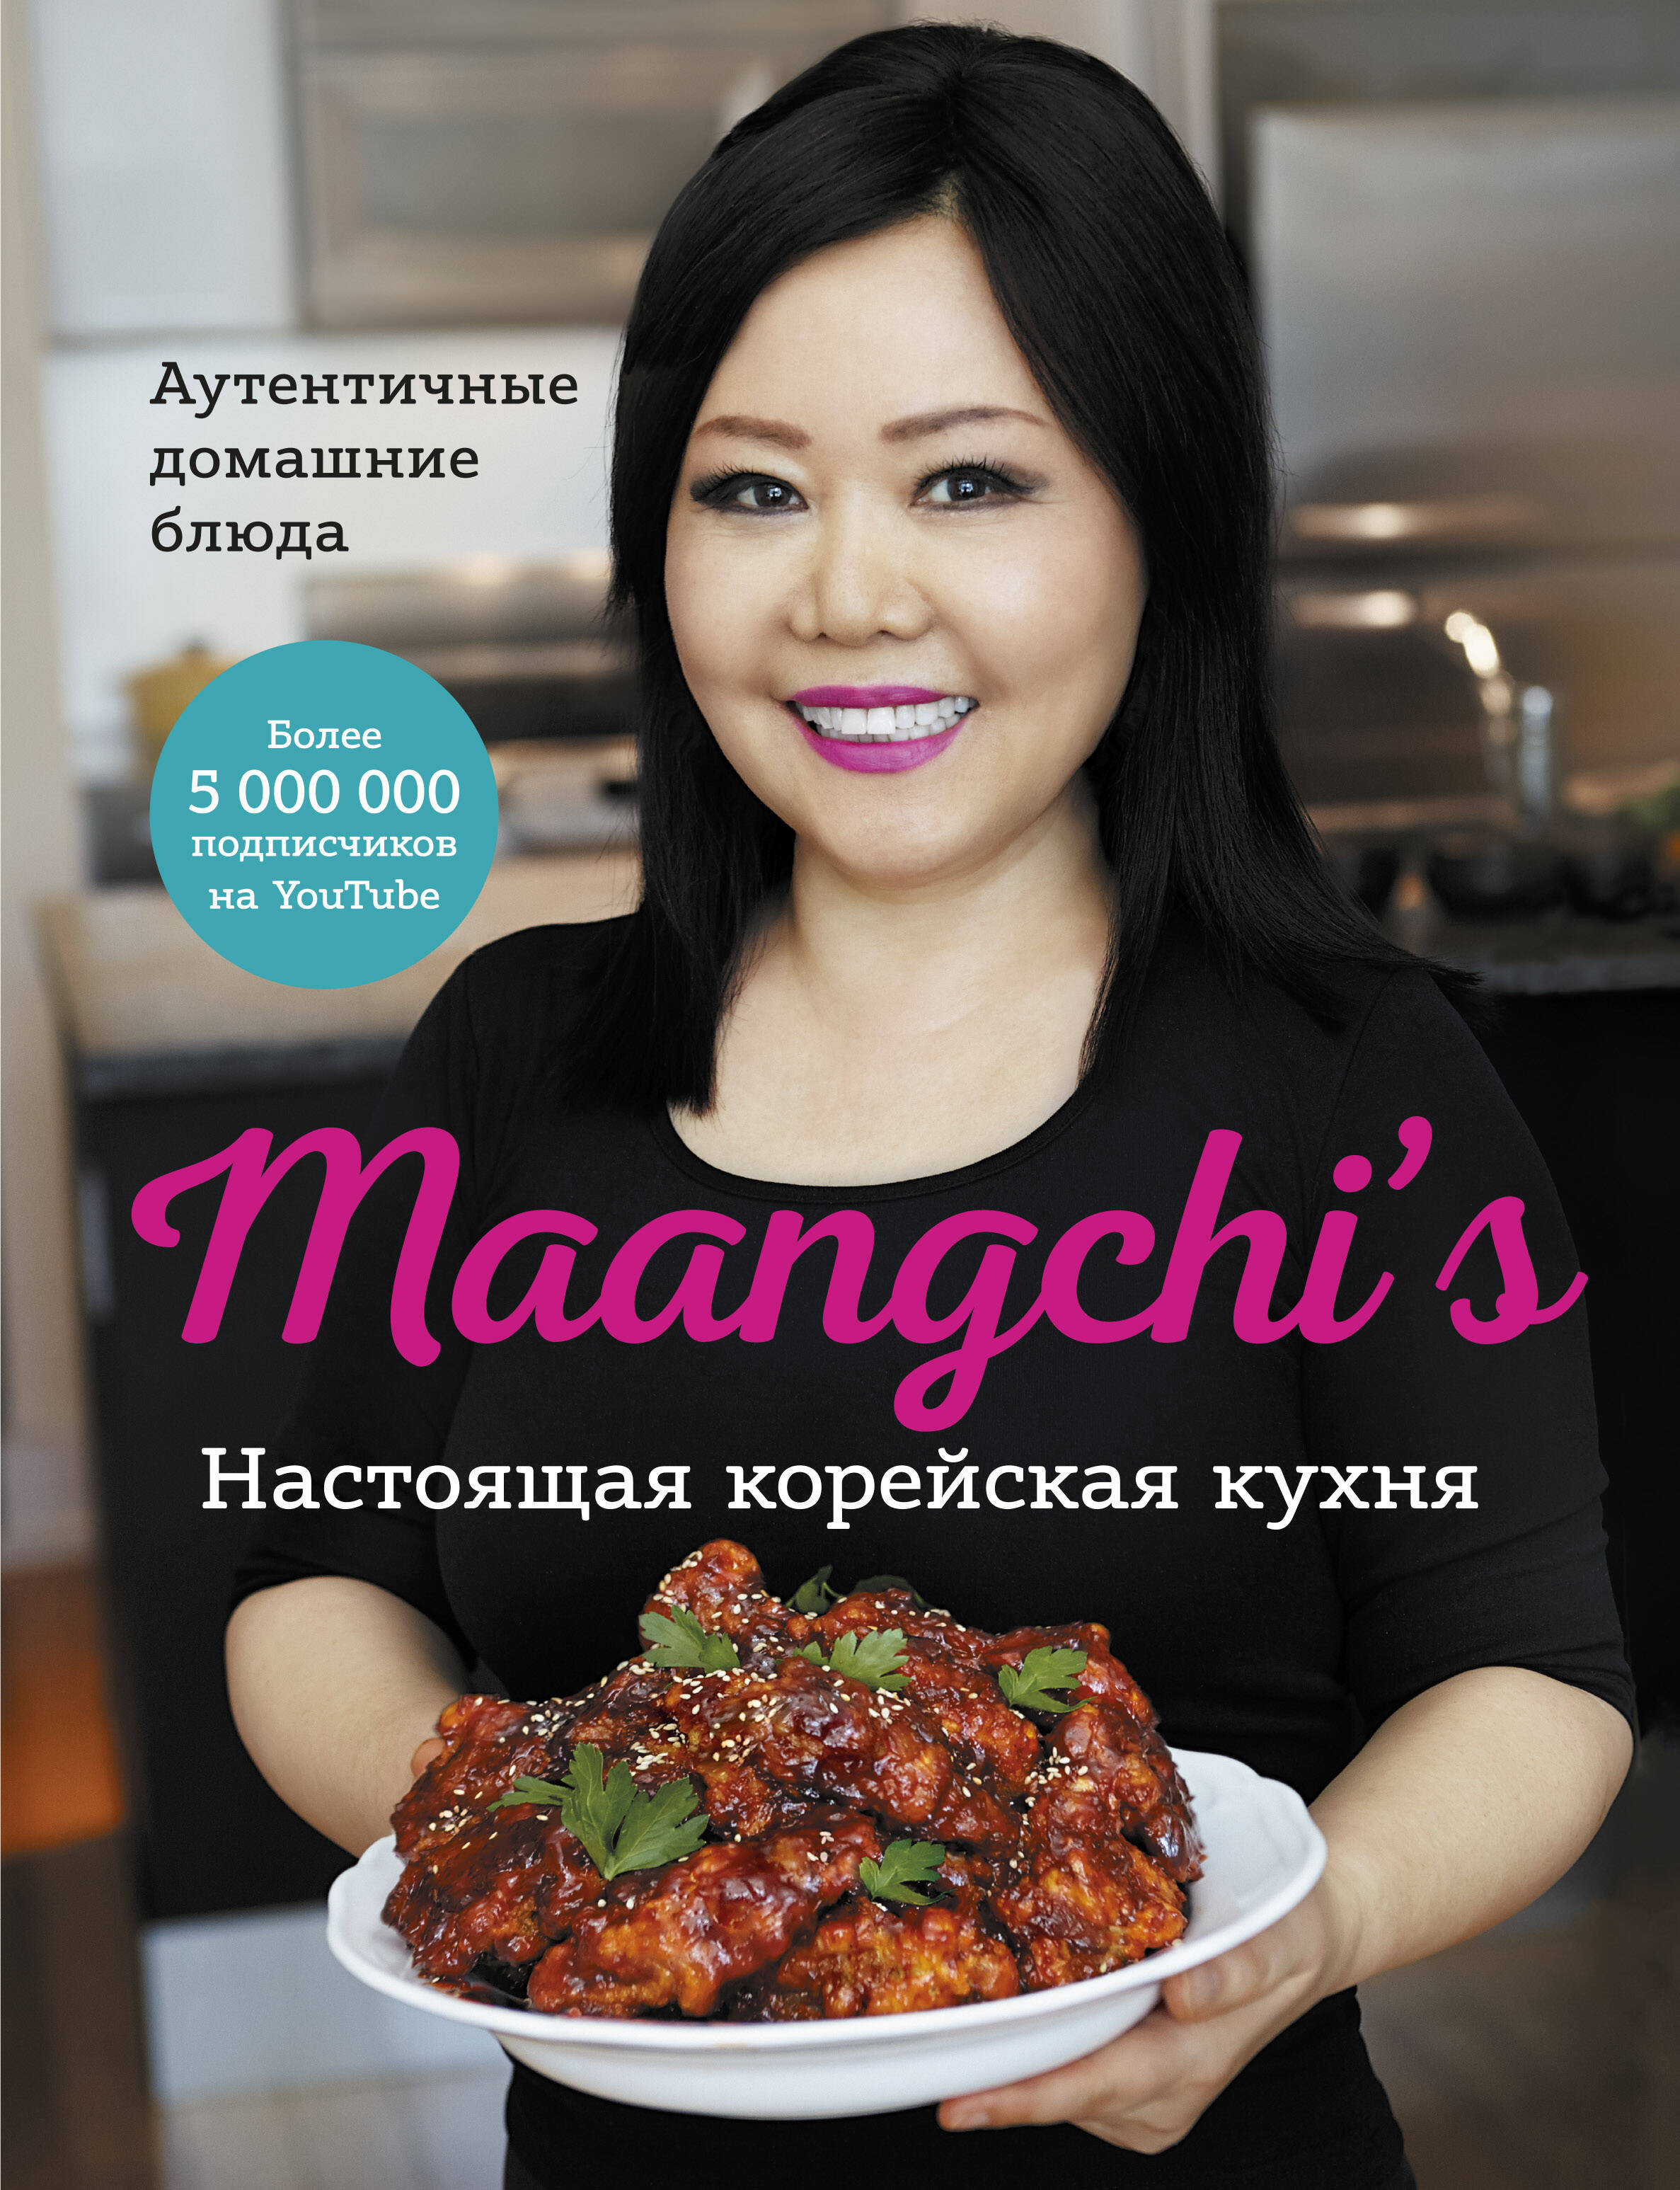 Maangchi - Настоящая корейская кухня. Аутентичные домашние блюда